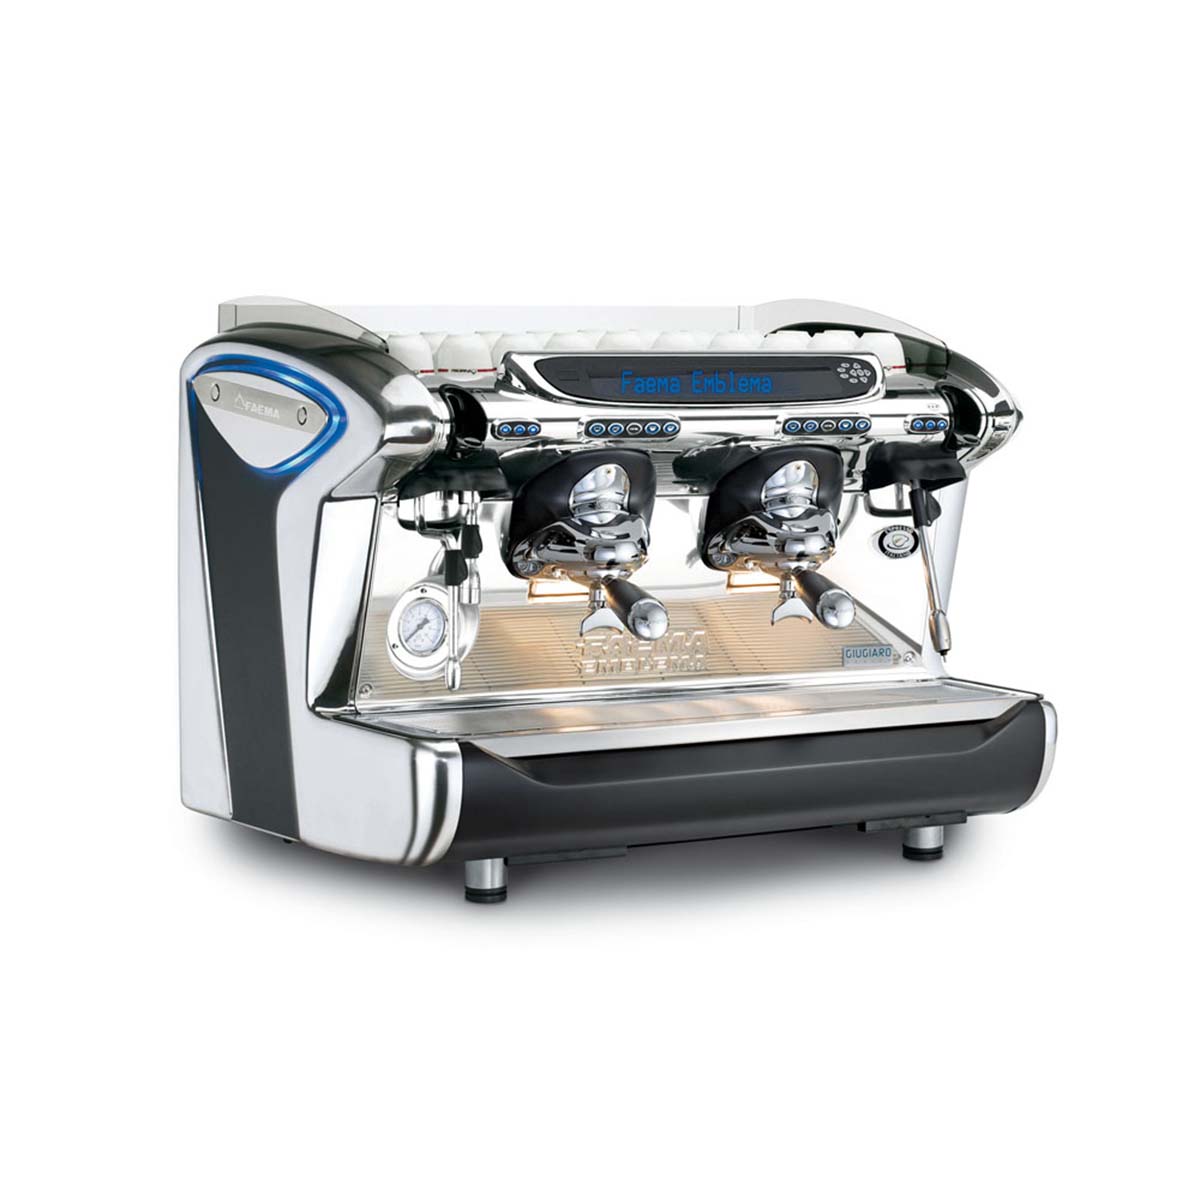 Faema FAEMA-LOGO  Espresso Machine! 